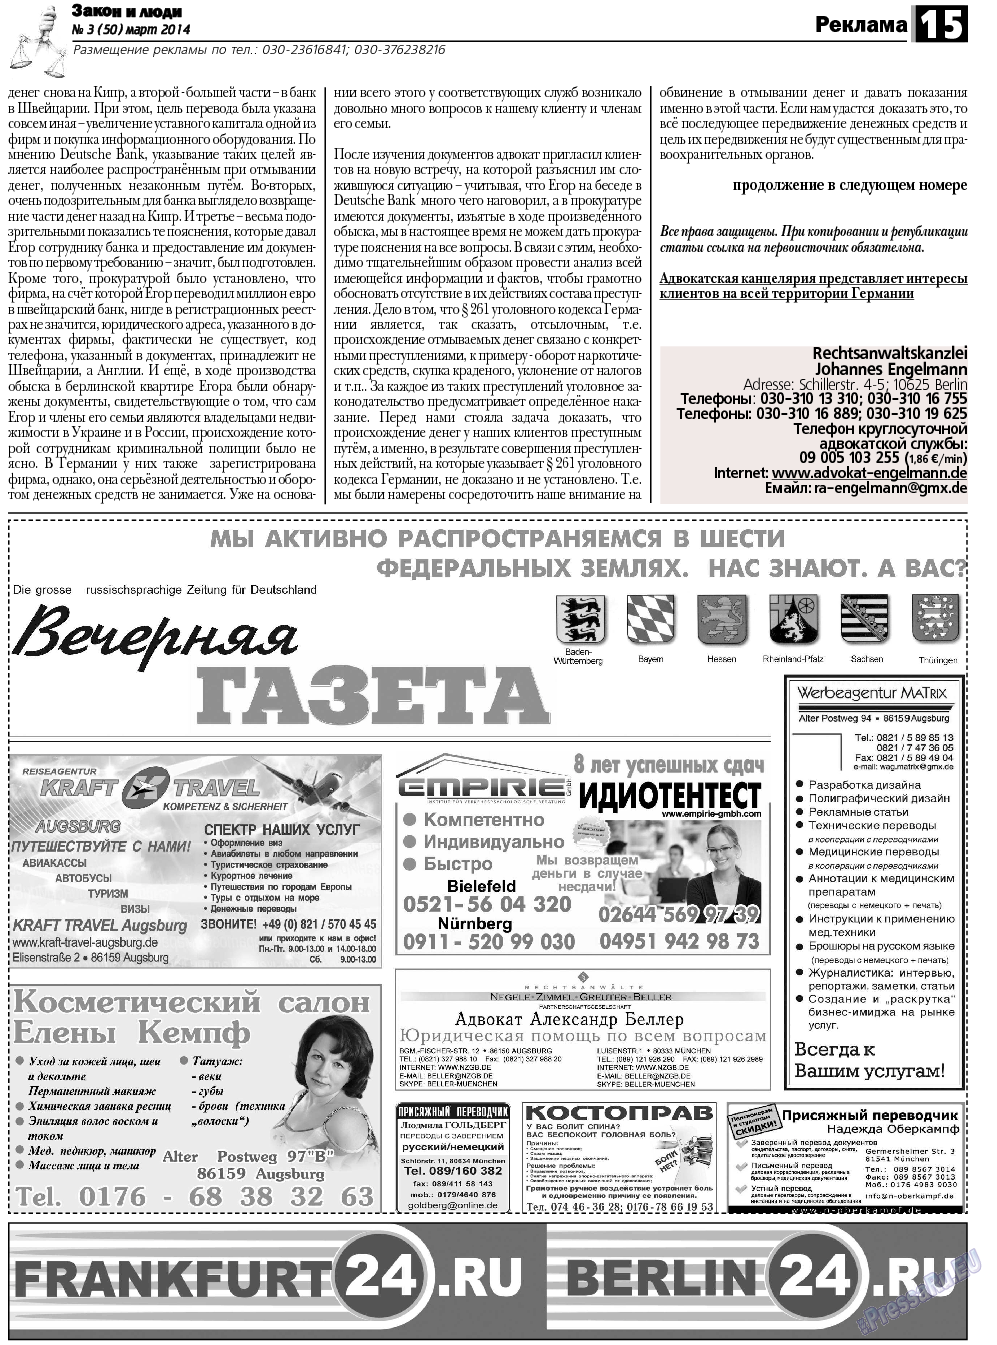 Закон и люди, газета. 2014 №3 стр.15